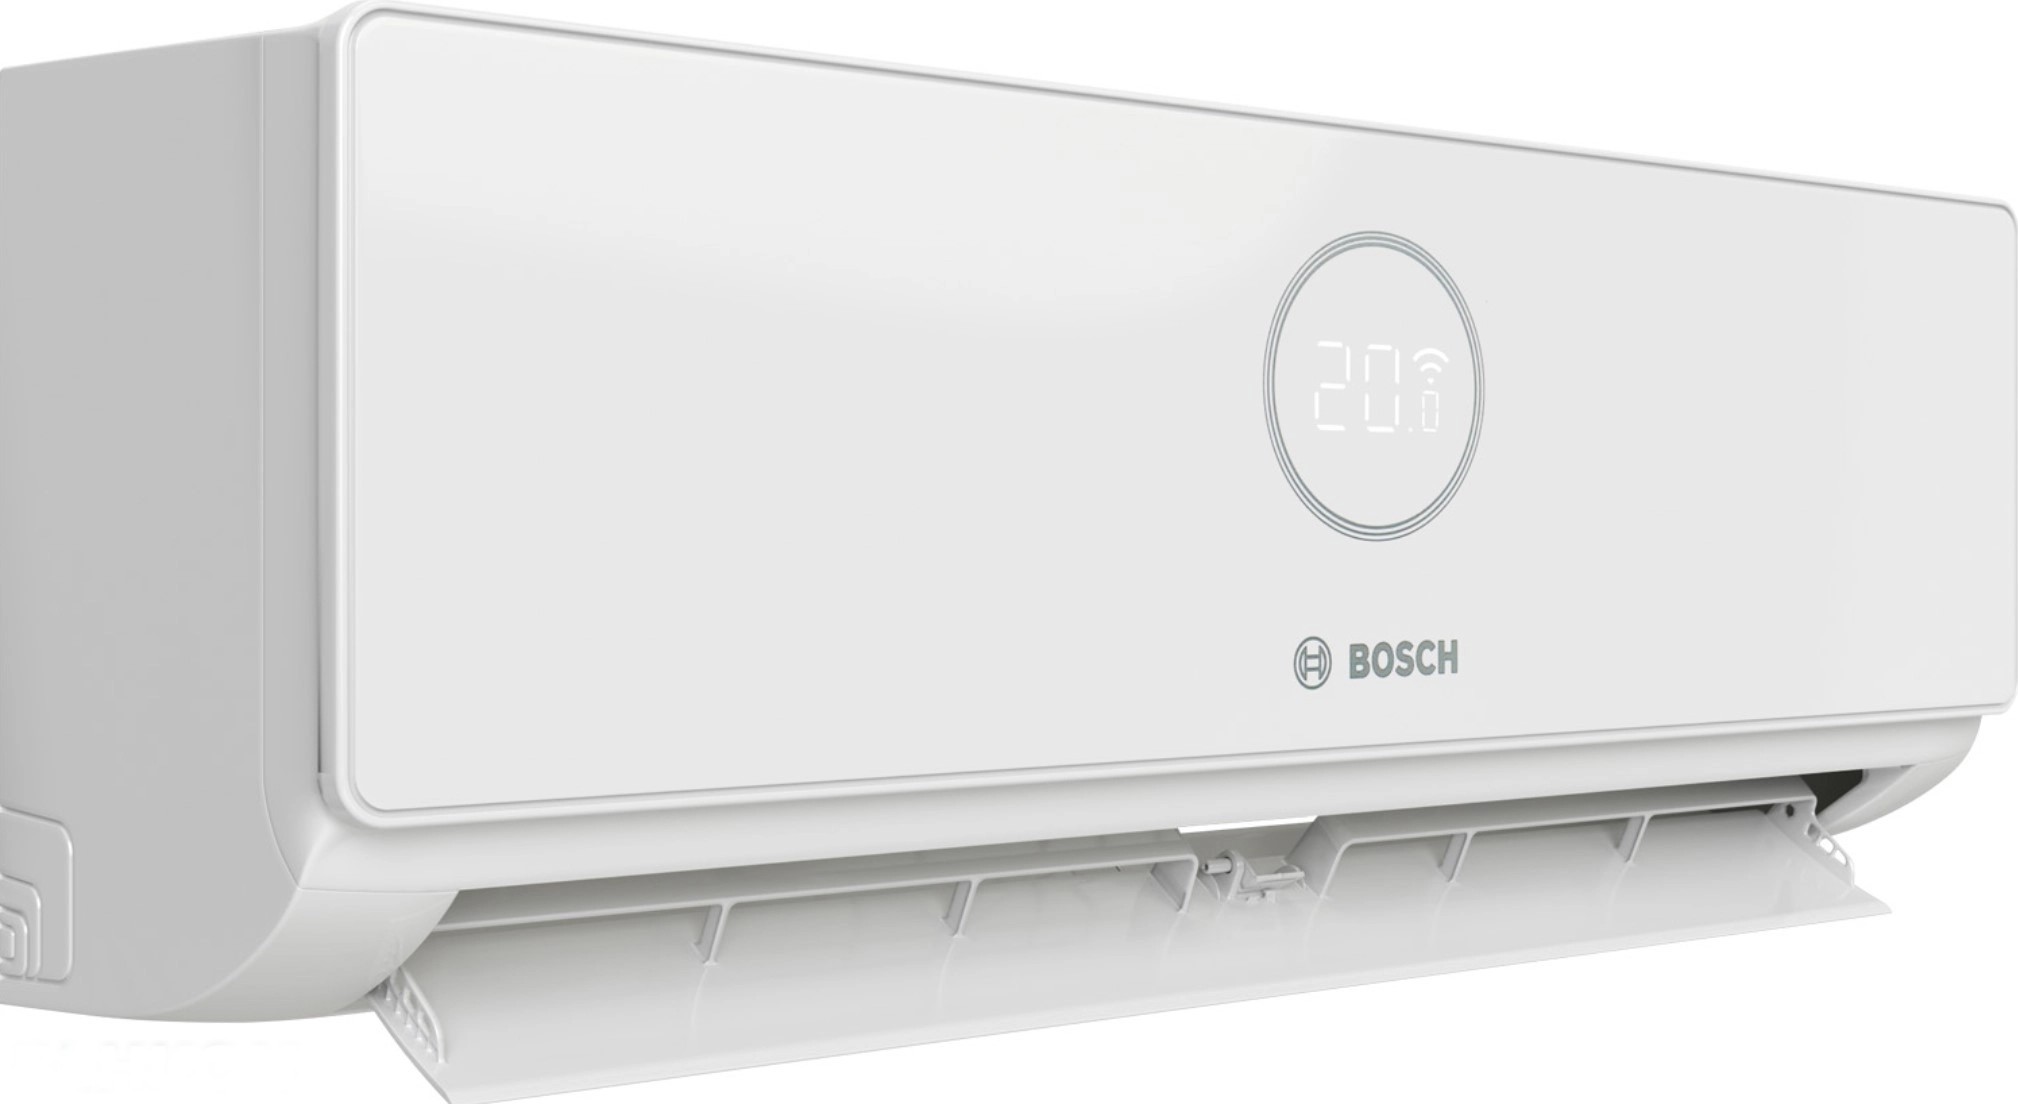 продаём Bosch CL3000iU W 26E 2,6 кВт в Украине - фото 4